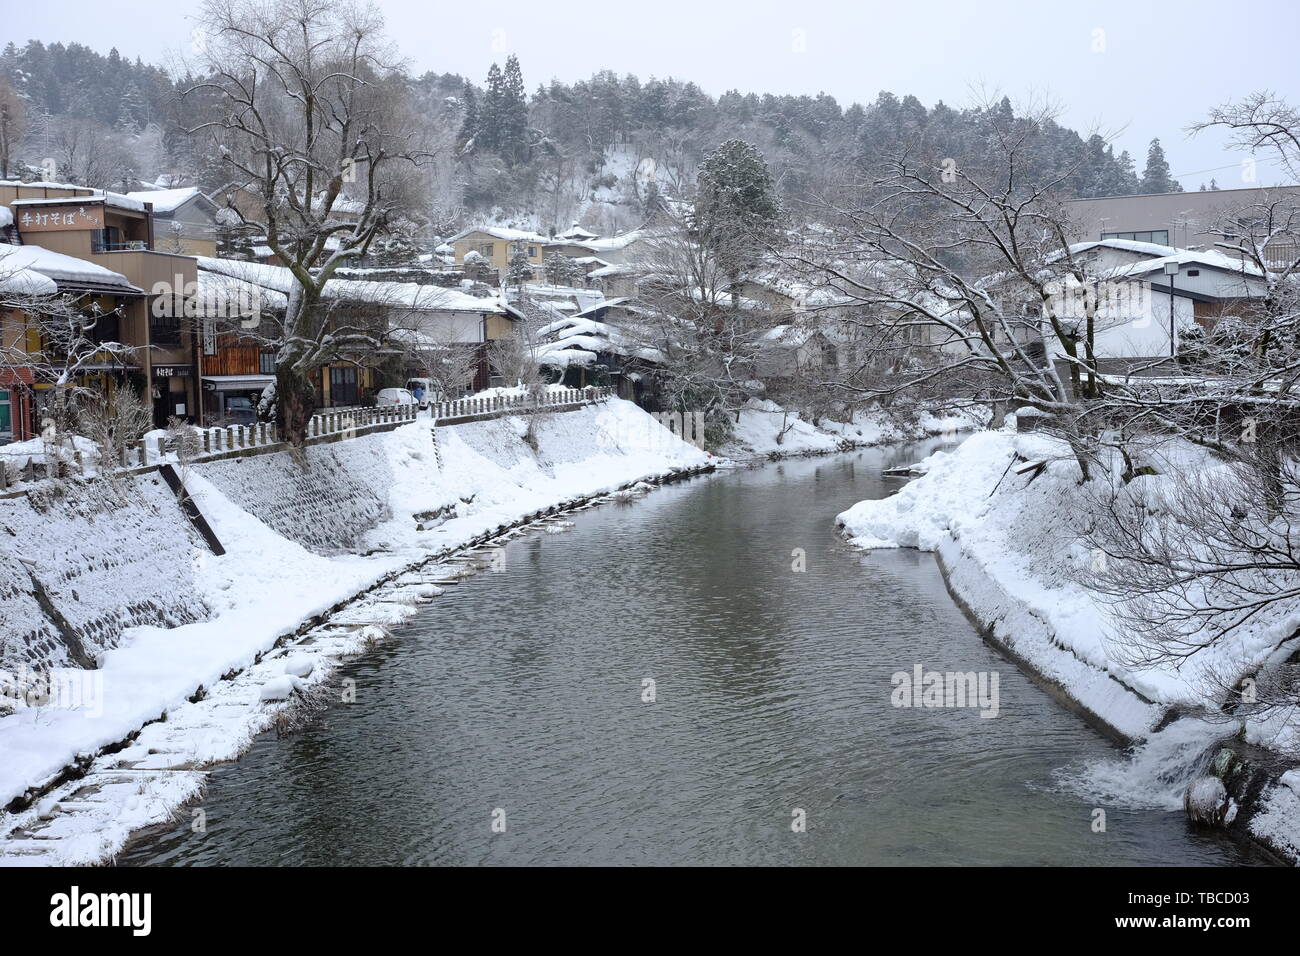 La ciudad de Takayama en invierno, la nieve Foto de stock